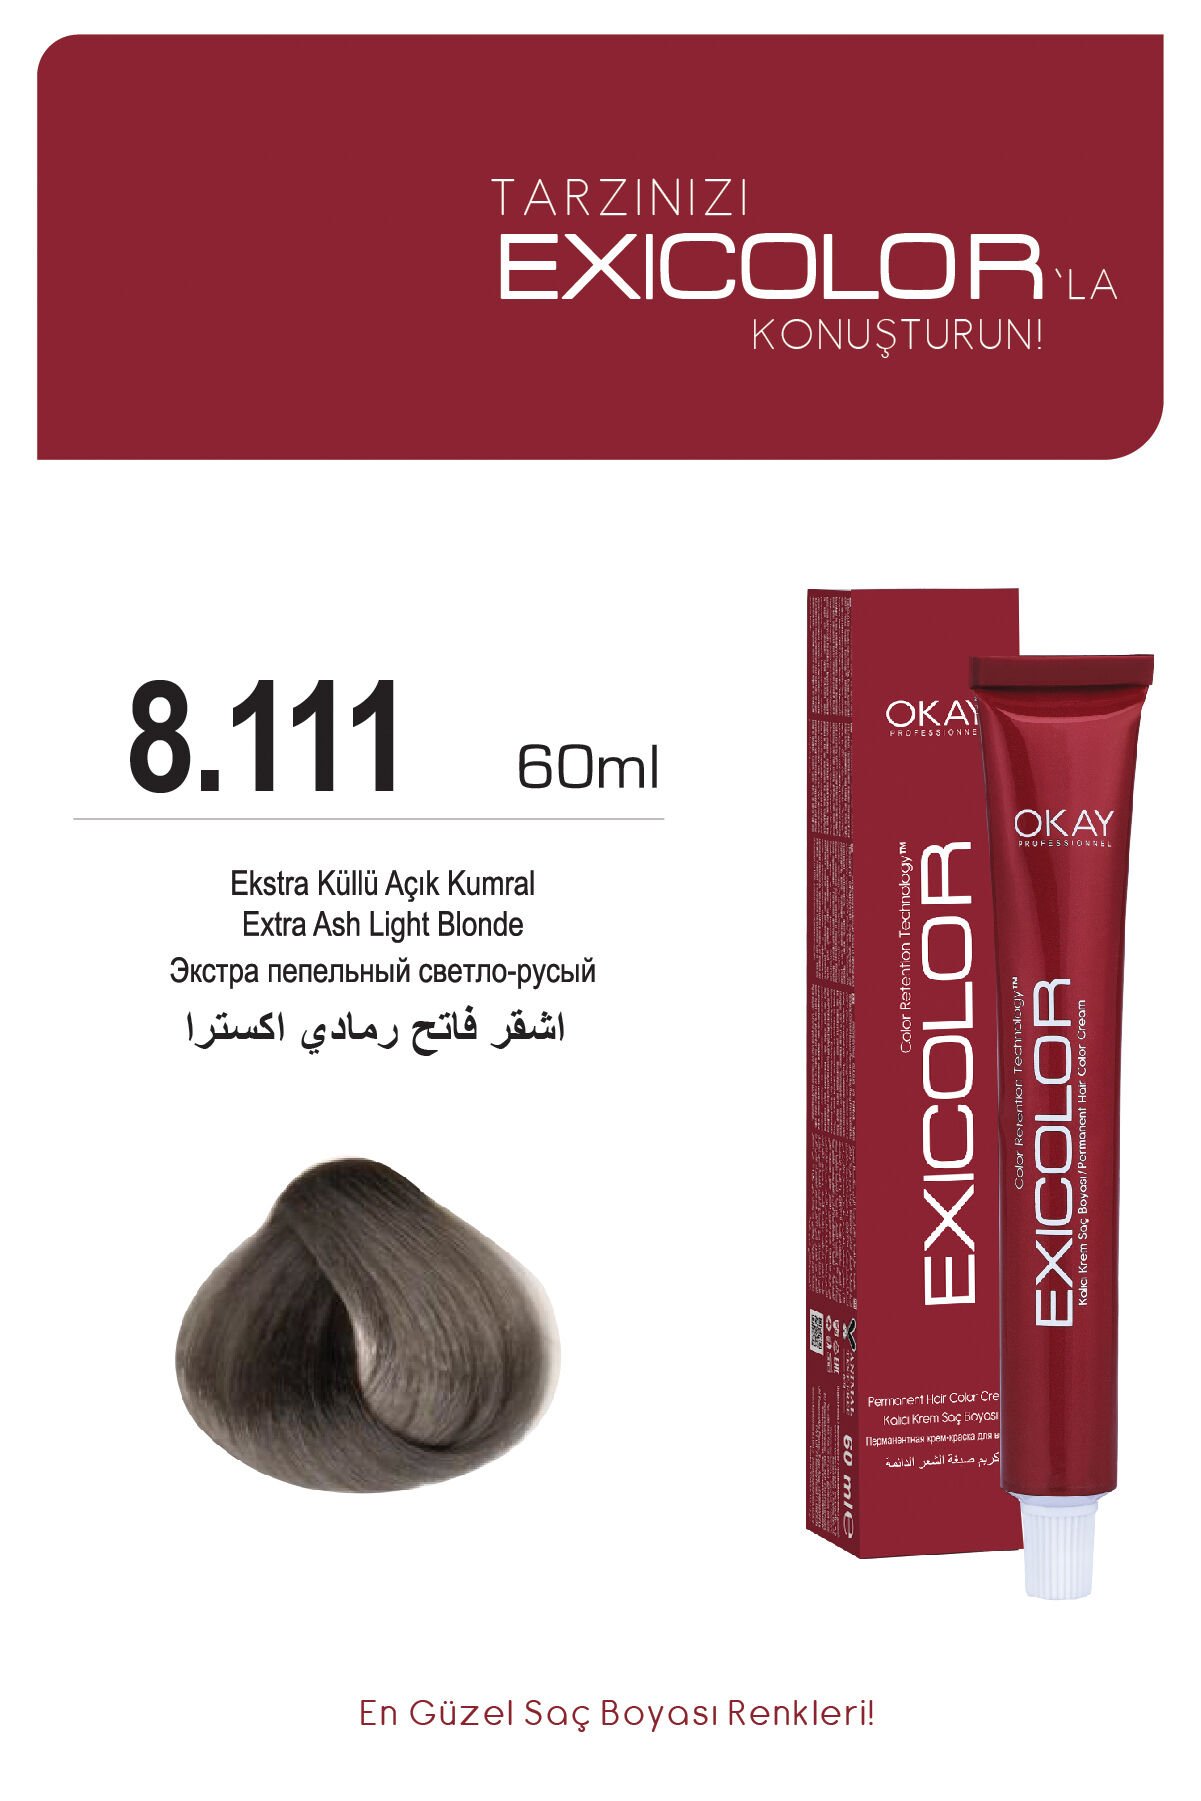 Exicolor 8.111 Ekstra Küllü Açık Kumral - Kalıcı Krem Saç Boyası 60 ml Tüp